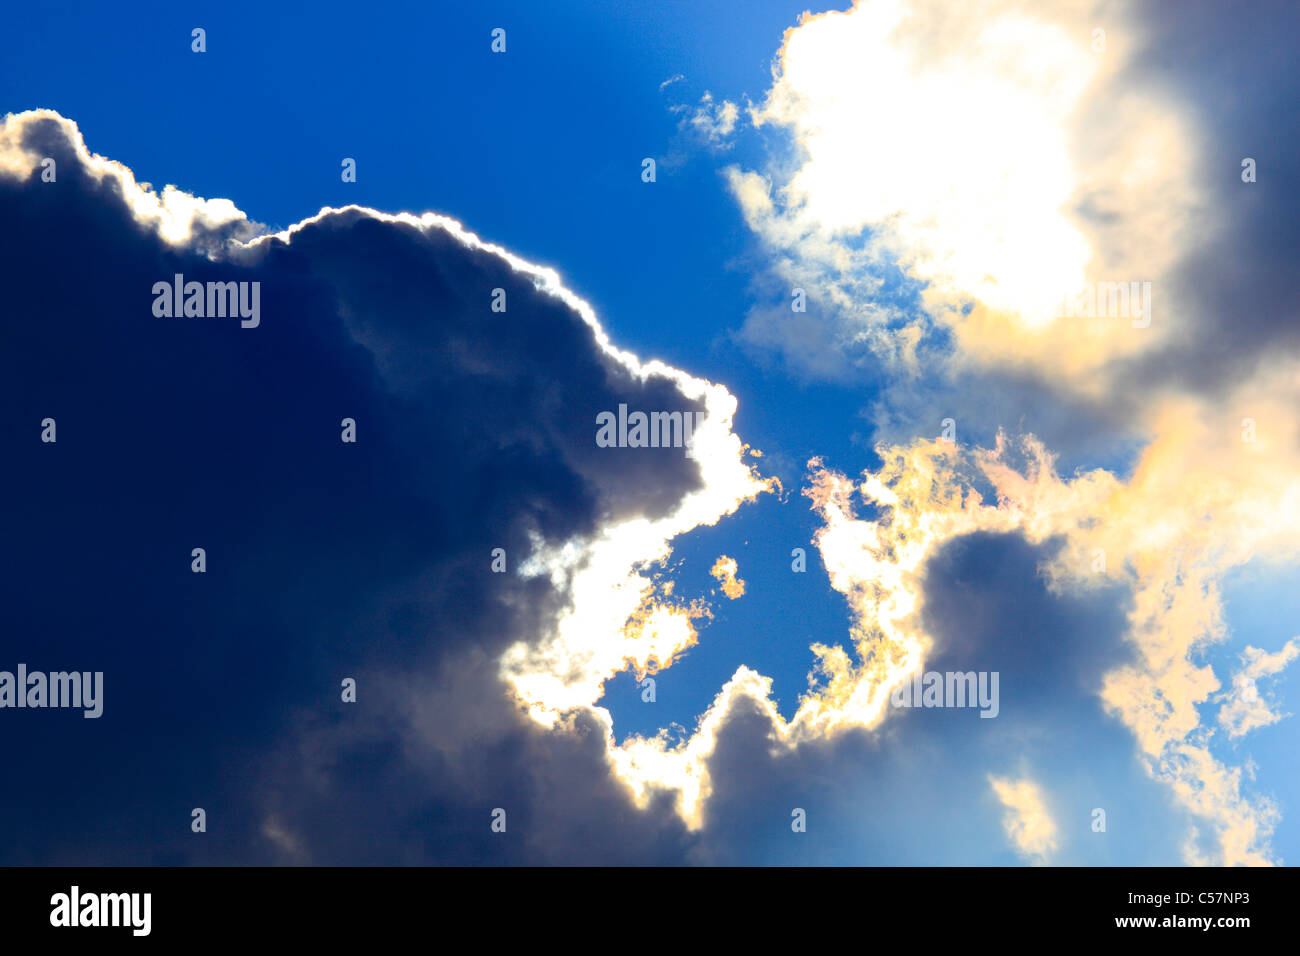 Tormenta, sky, patrón, ejemplo, la lluvia, el sol, los rayos solares, el estado de ánimo, nubes, nubes, abstracta, el cielo azul, azul, gris, atmosphe gráfica Foto de stock